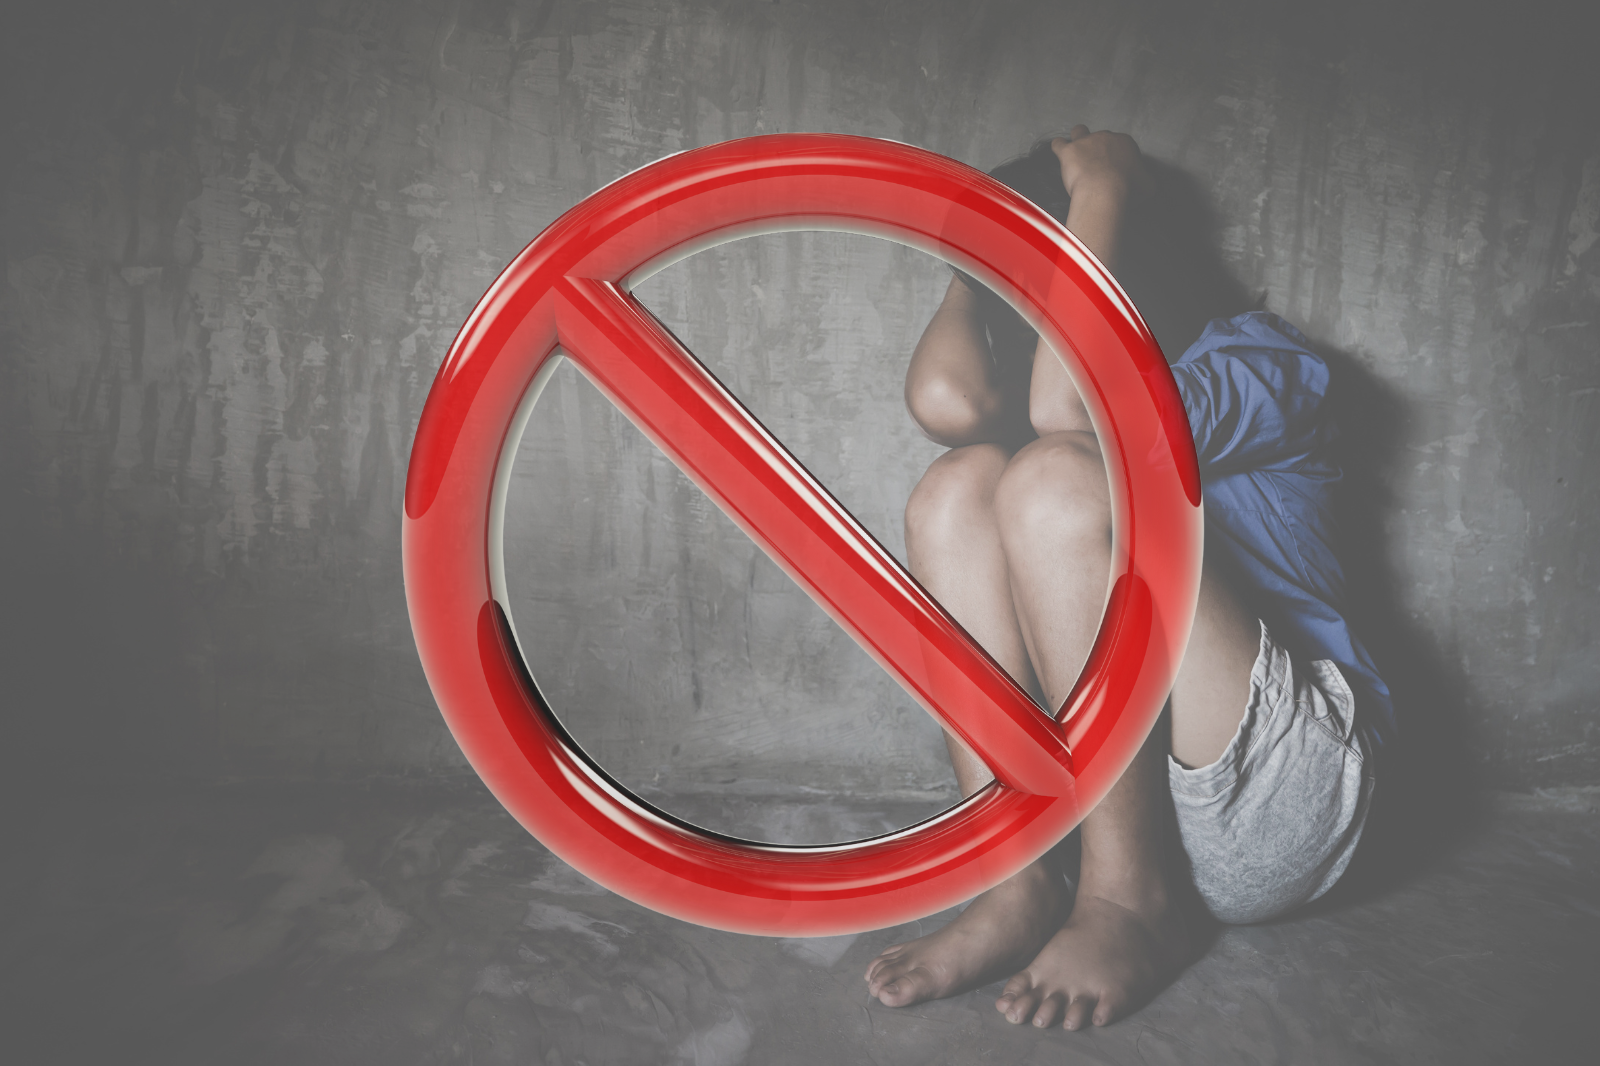 Combate à exploração infantil: Projeto de Lei obriga estabelecimentos a informar sobre crimes contra crianças e adolescentes